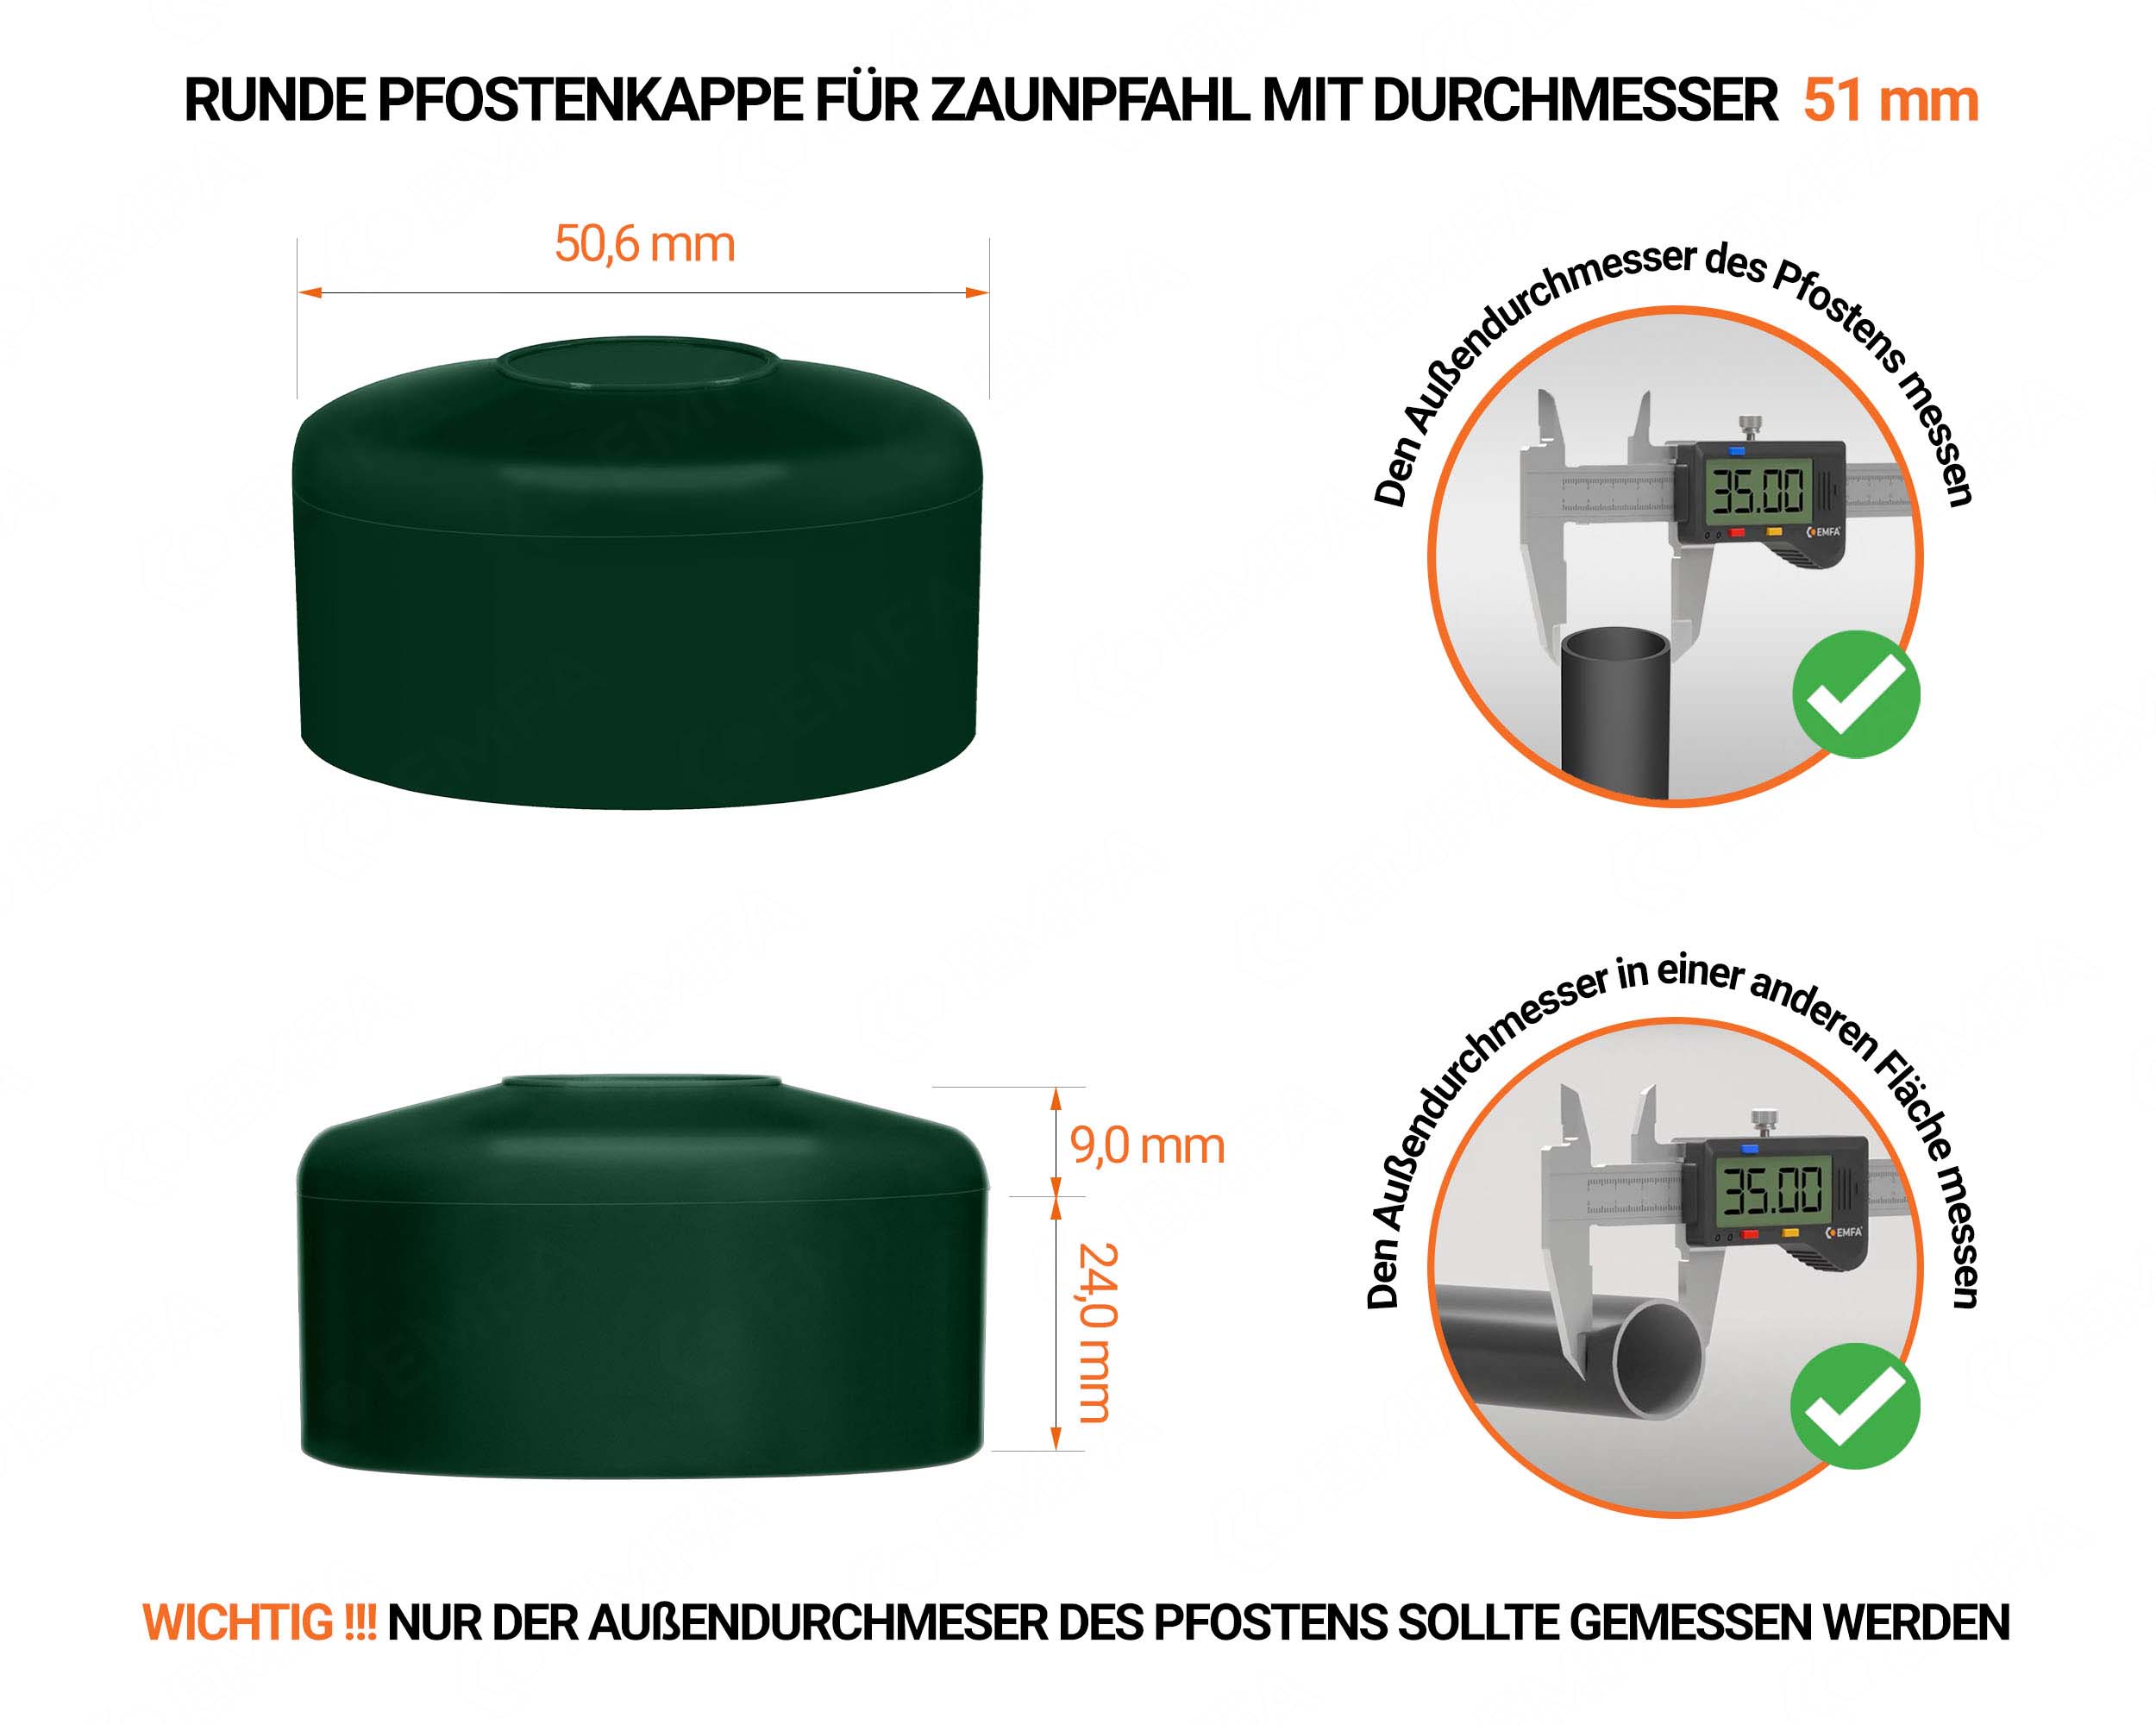 Grüne Pfostenkappen rund für Pfostendurchmesser  51 mm mit technischen Abmessungen und Anleitung für korrekte Messung